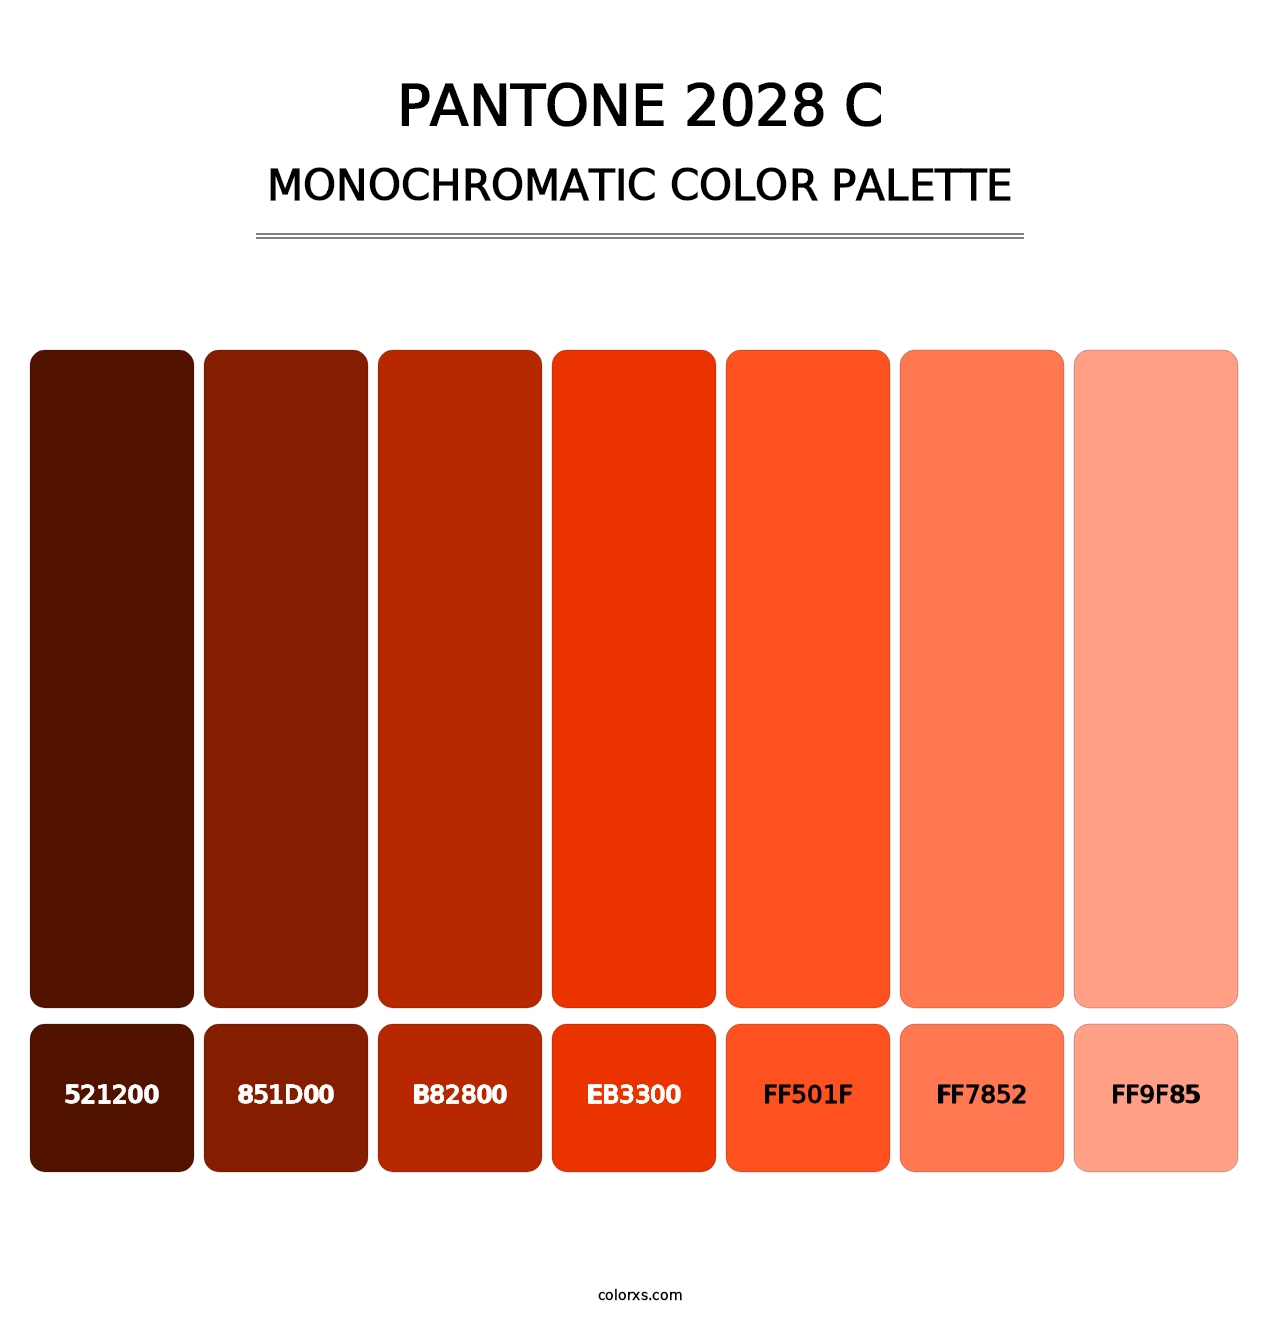 PANTONE 2028 C - Monochromatic Color Palette